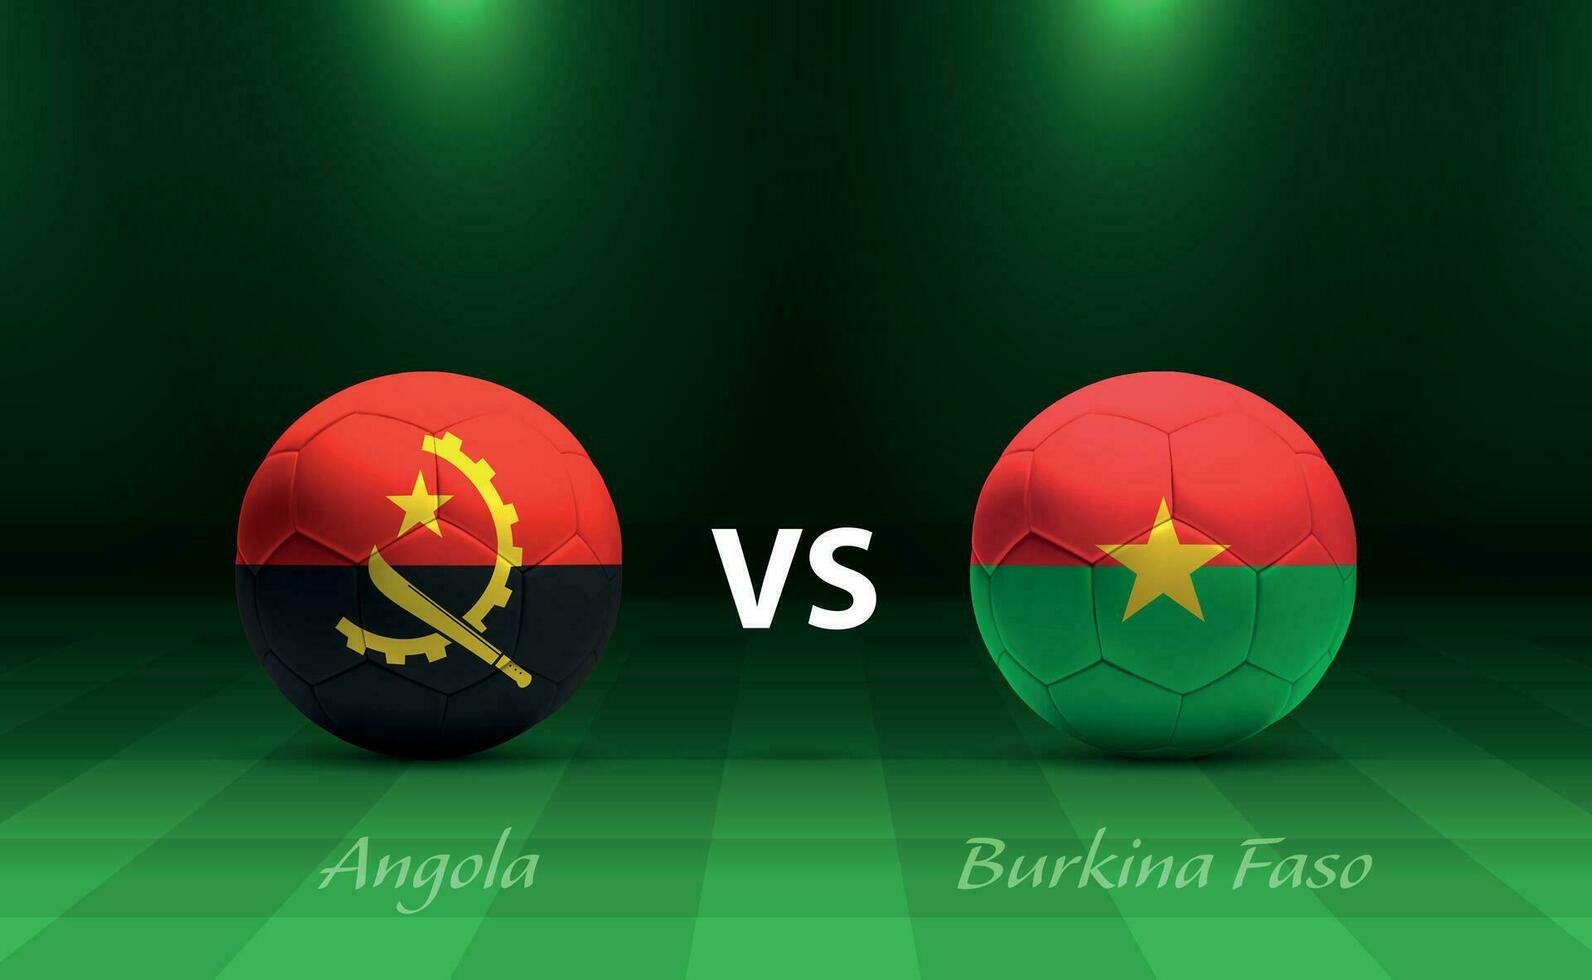 angola contre burkina faso Football tableau de bord diffuser modèle vecteur